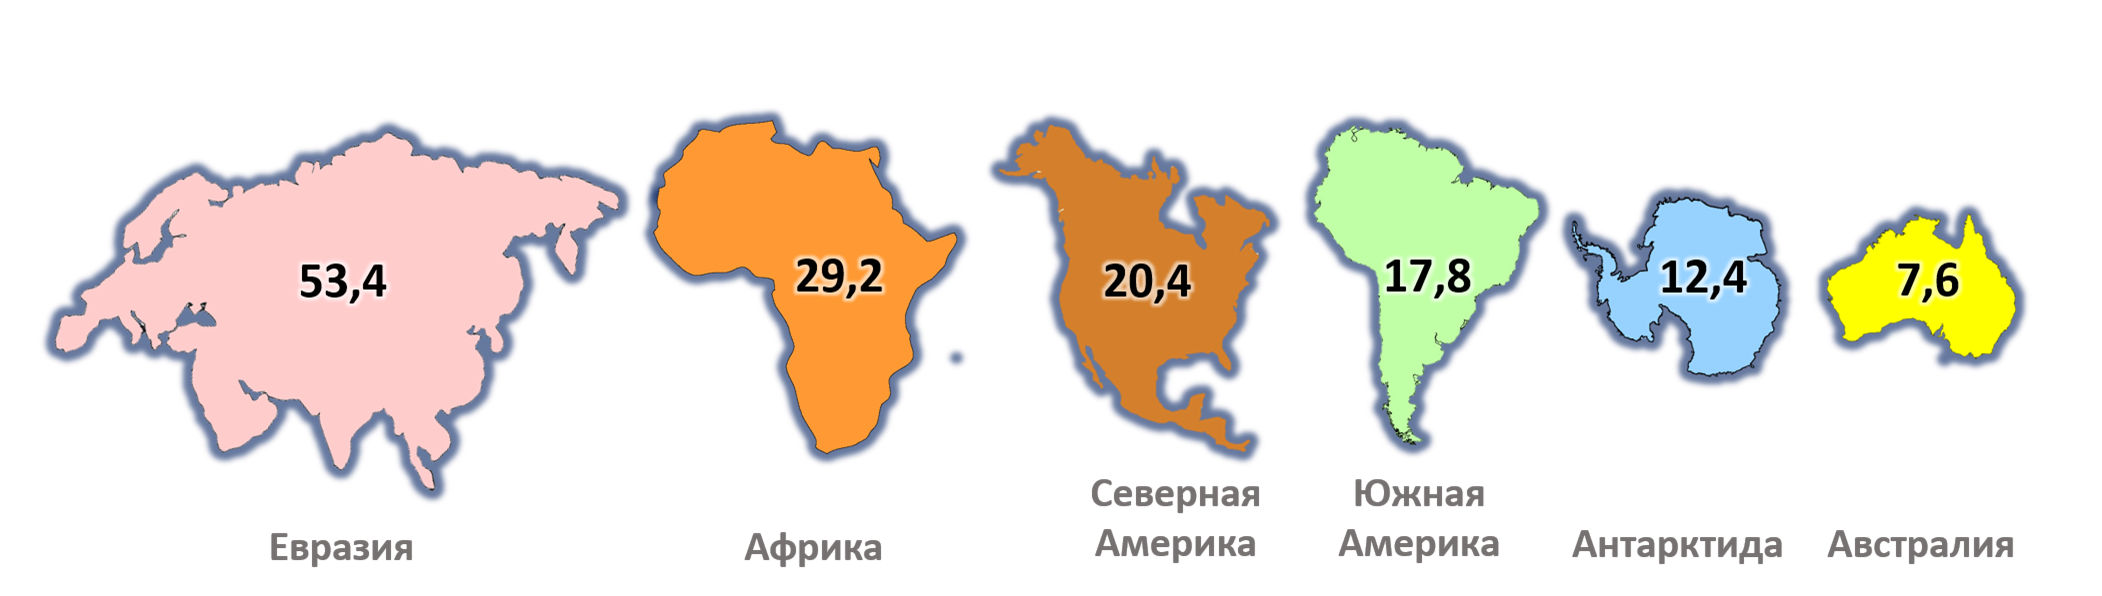 Северные материки евразия и северная америка. Евразия Африка Северная Америка Южная Америка Австралия Антарктида. Сравнение размеров материков на карте. Размеры материков по убыванию.